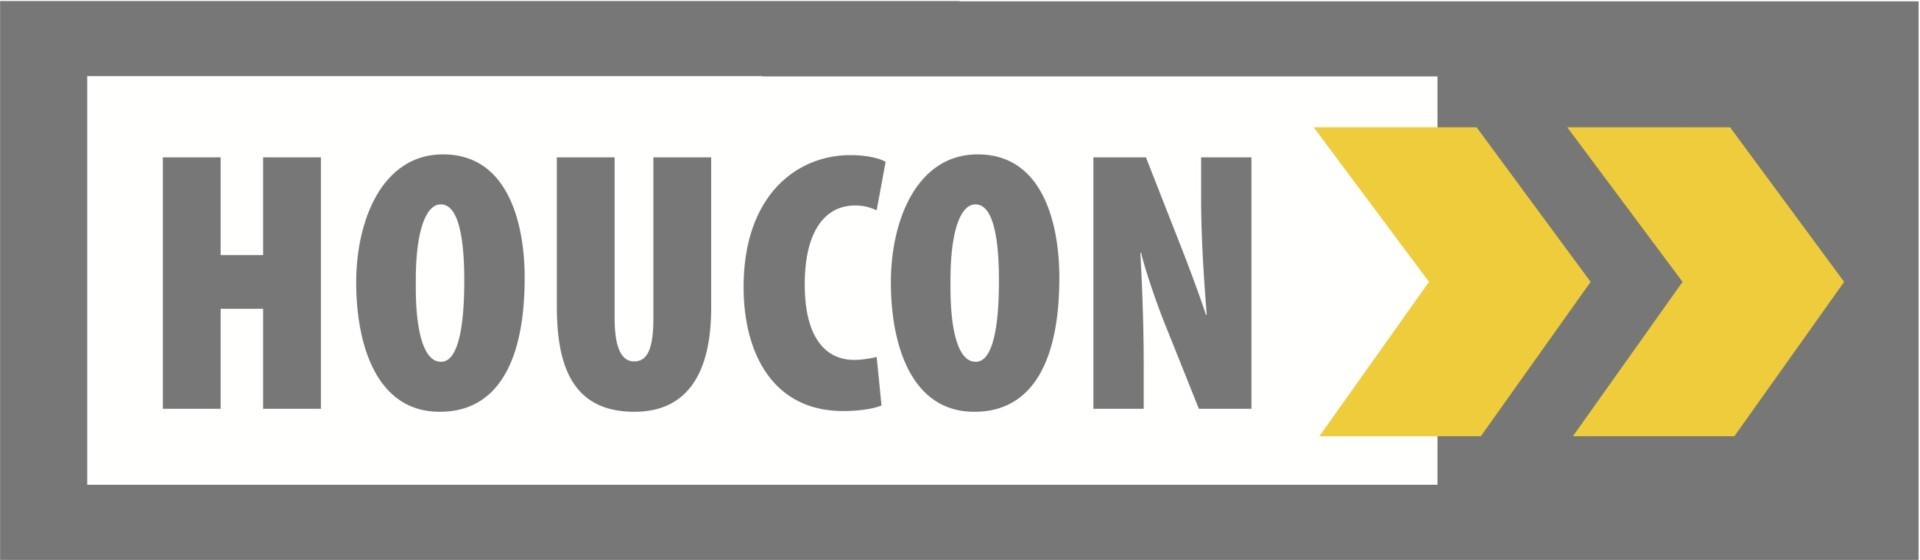 Houcon-logo-eps-org